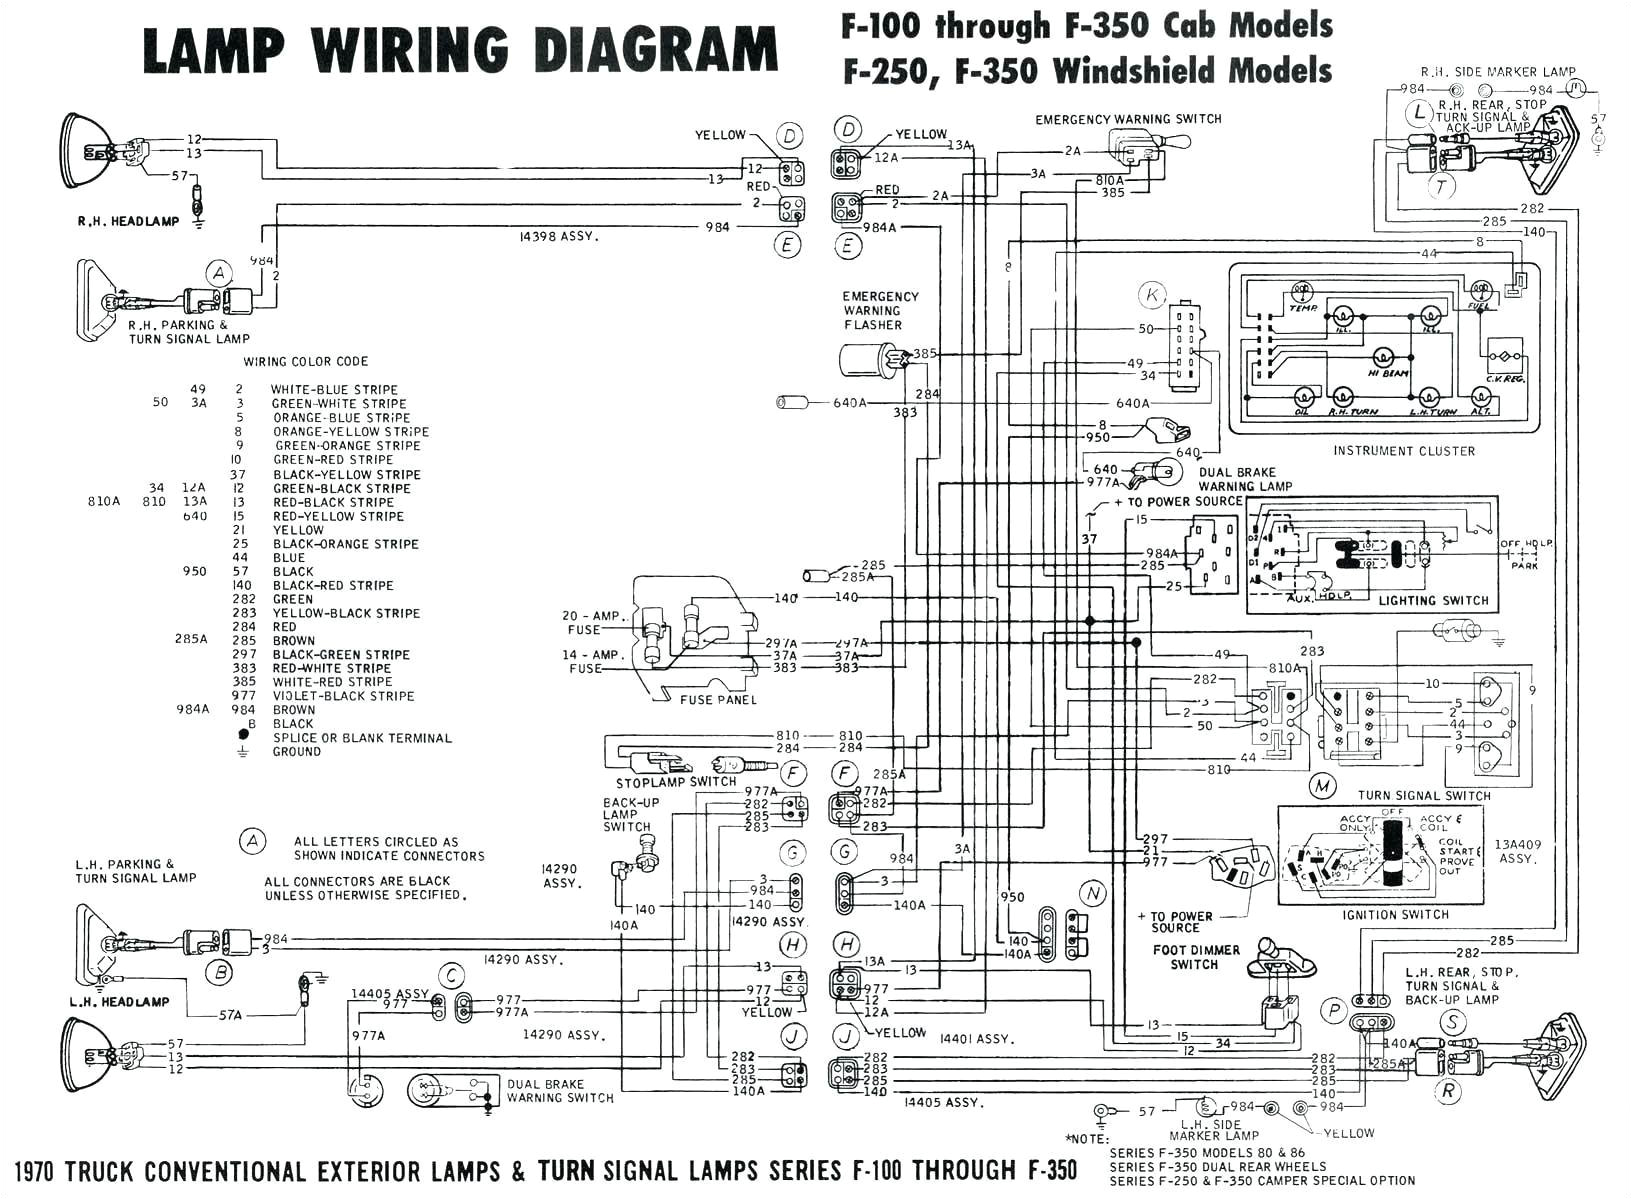 3 phase motor starter wiring diagram pdf beautiful 3 phase to single phase wiring diagram shahsramblings